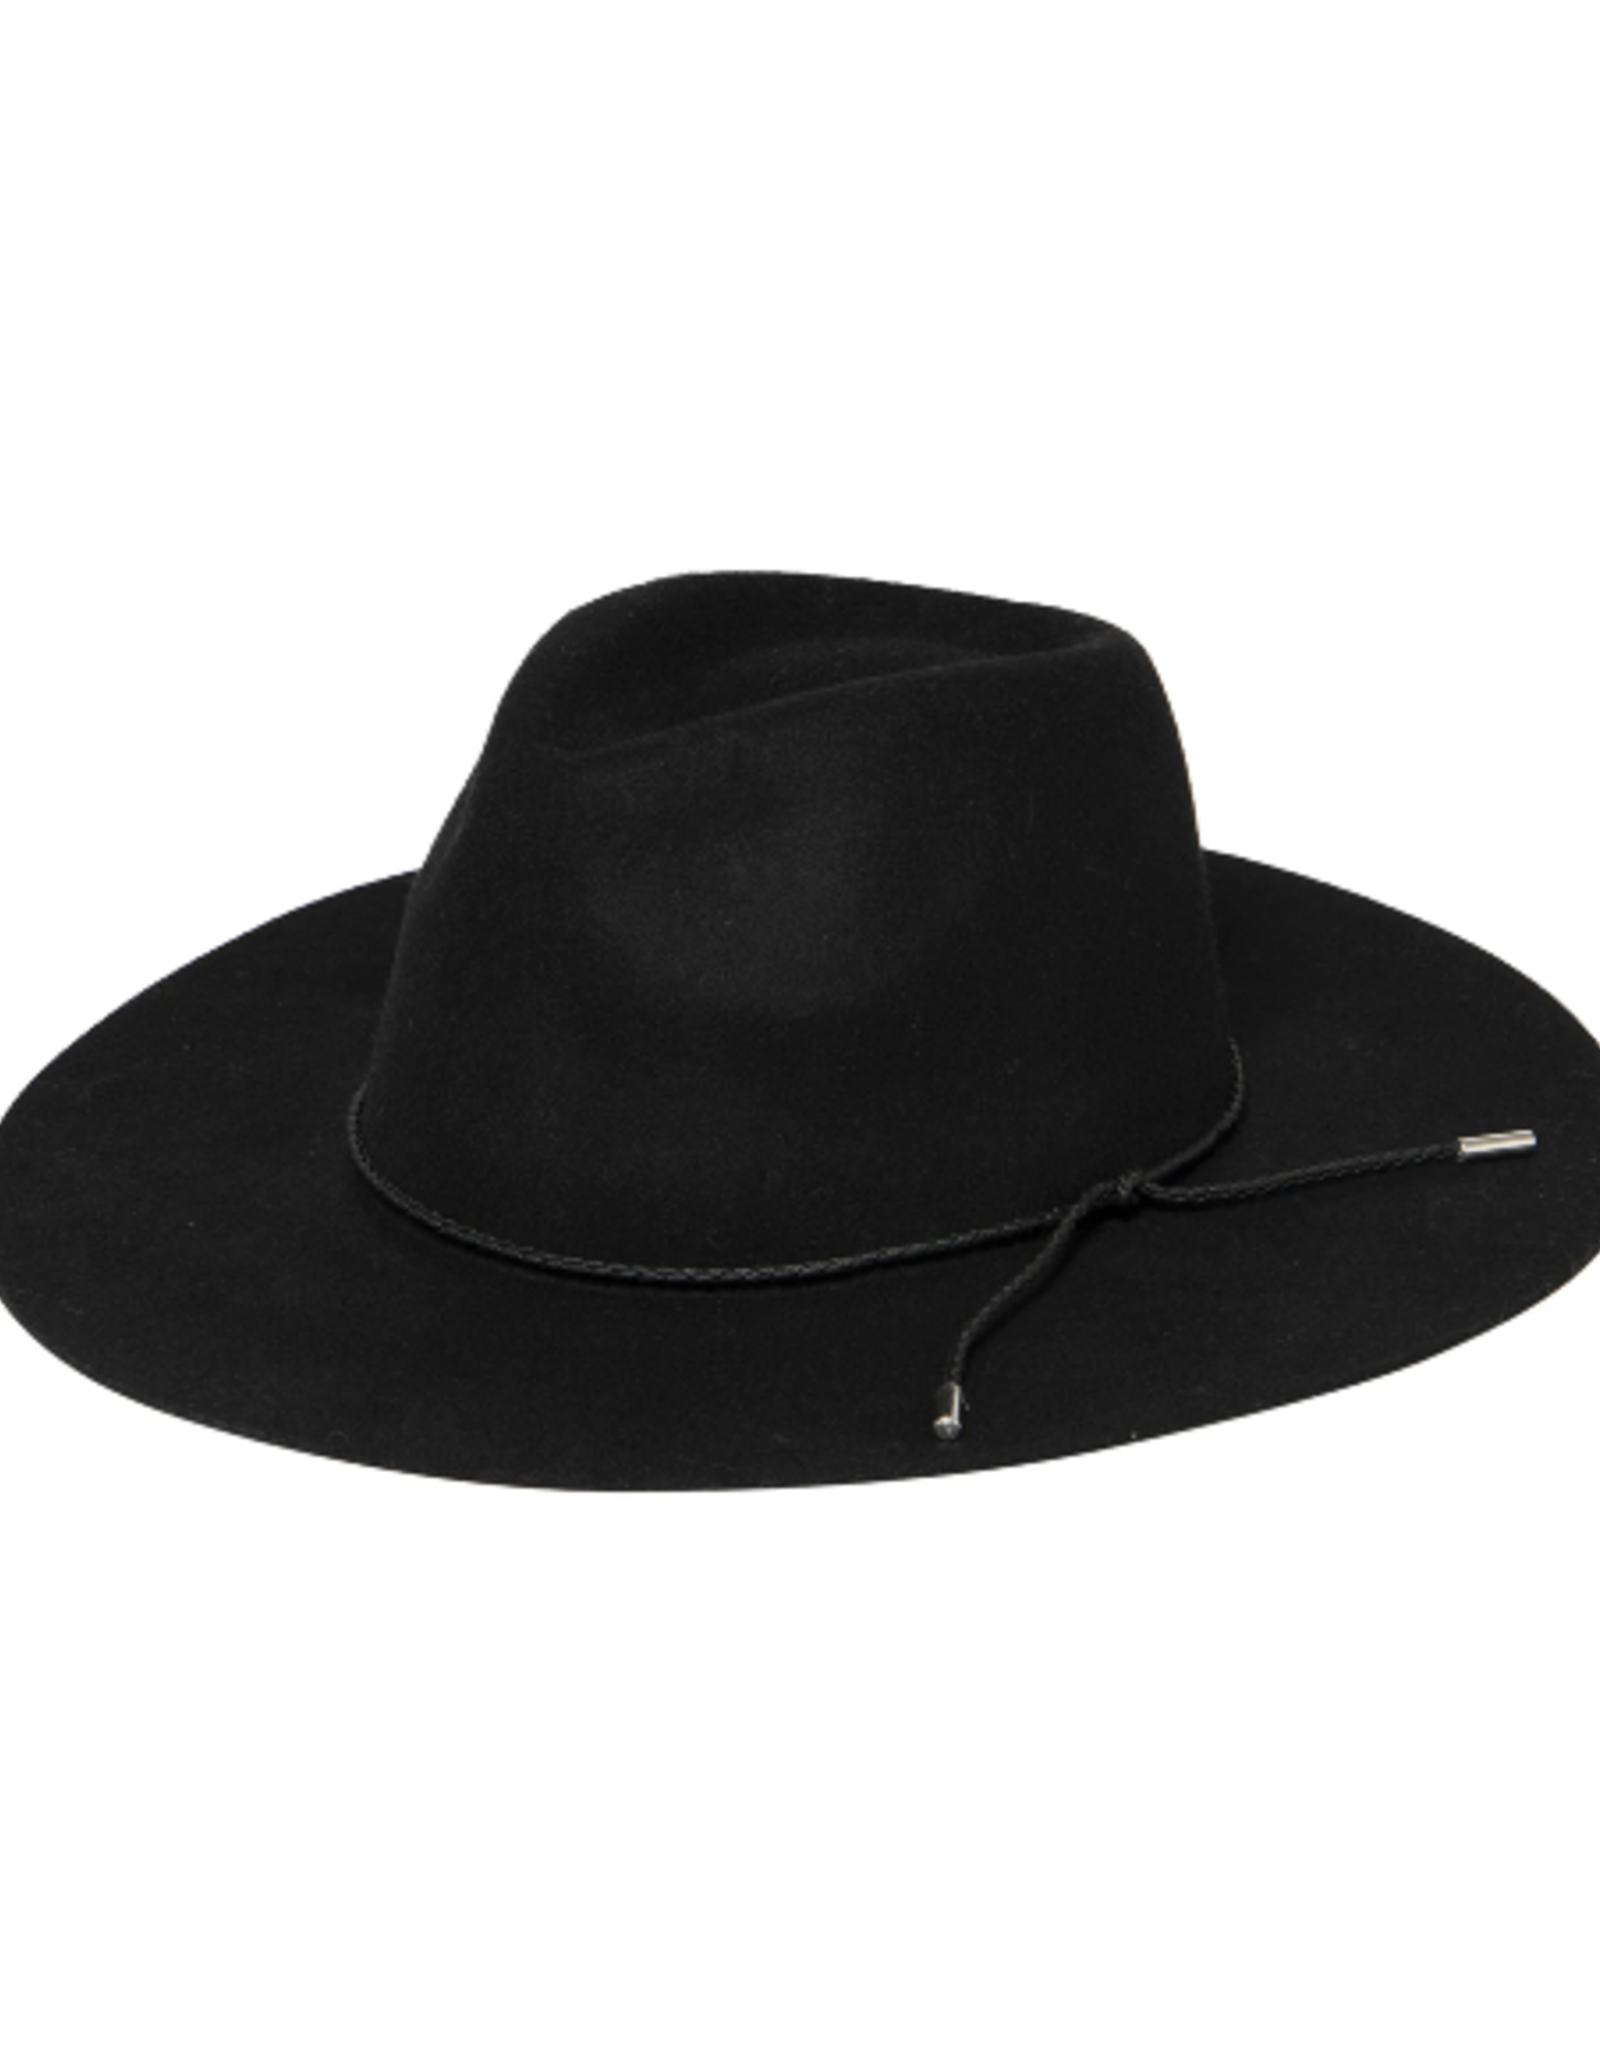 Fedora Hat Anza Floppy Brim Black Wool With Braided Cord Trim